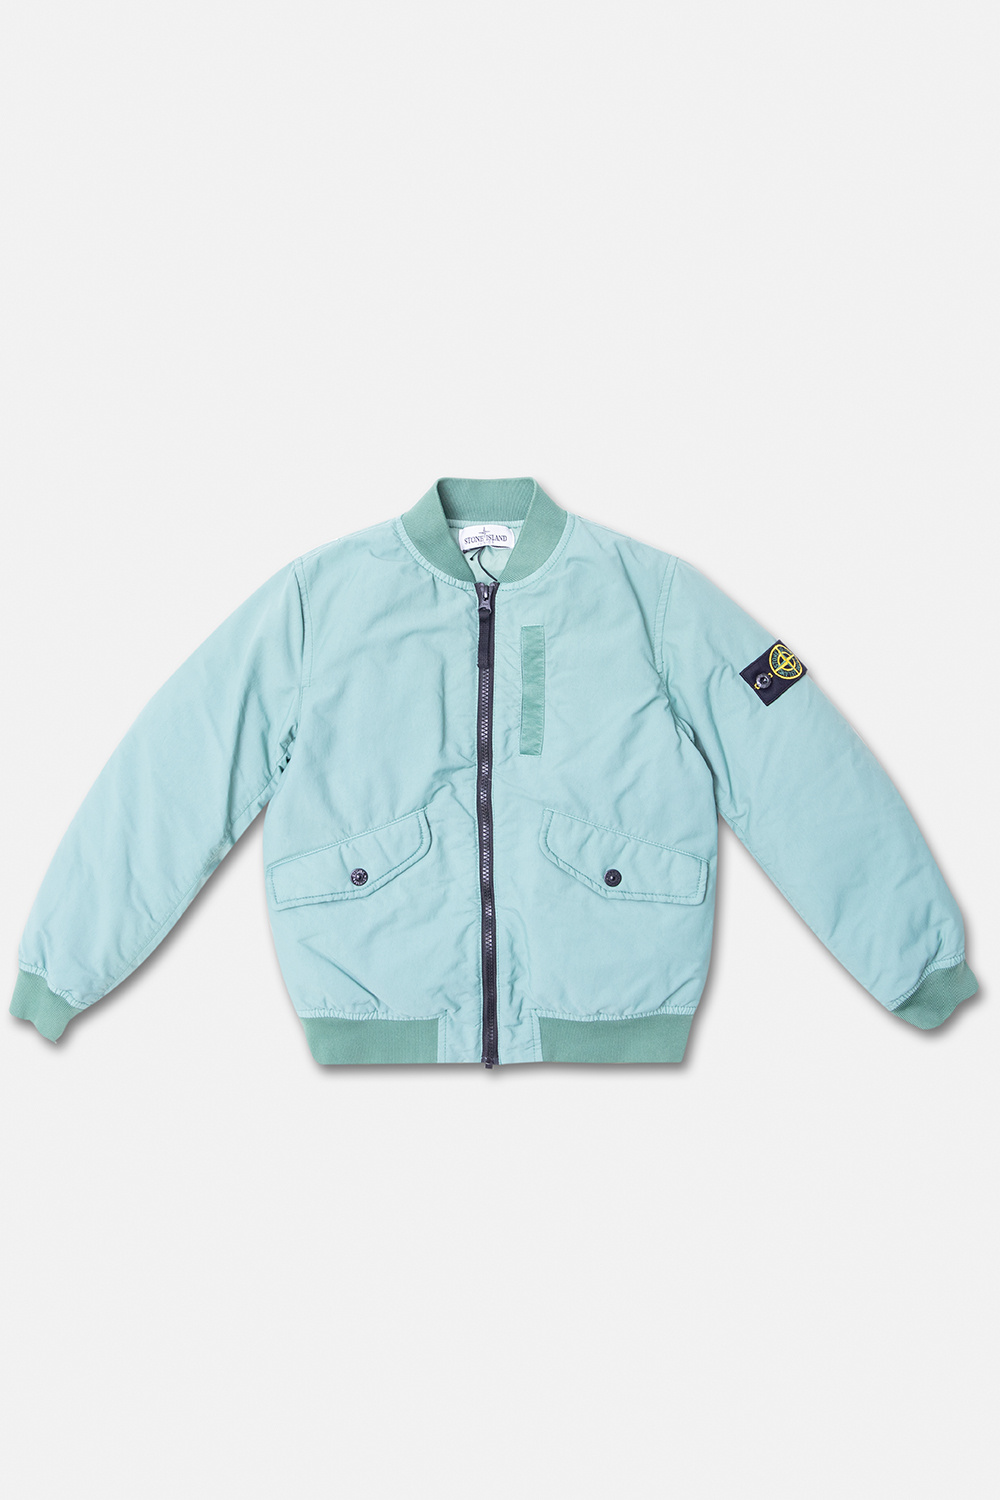 homegrown check shirt Bomber jacket